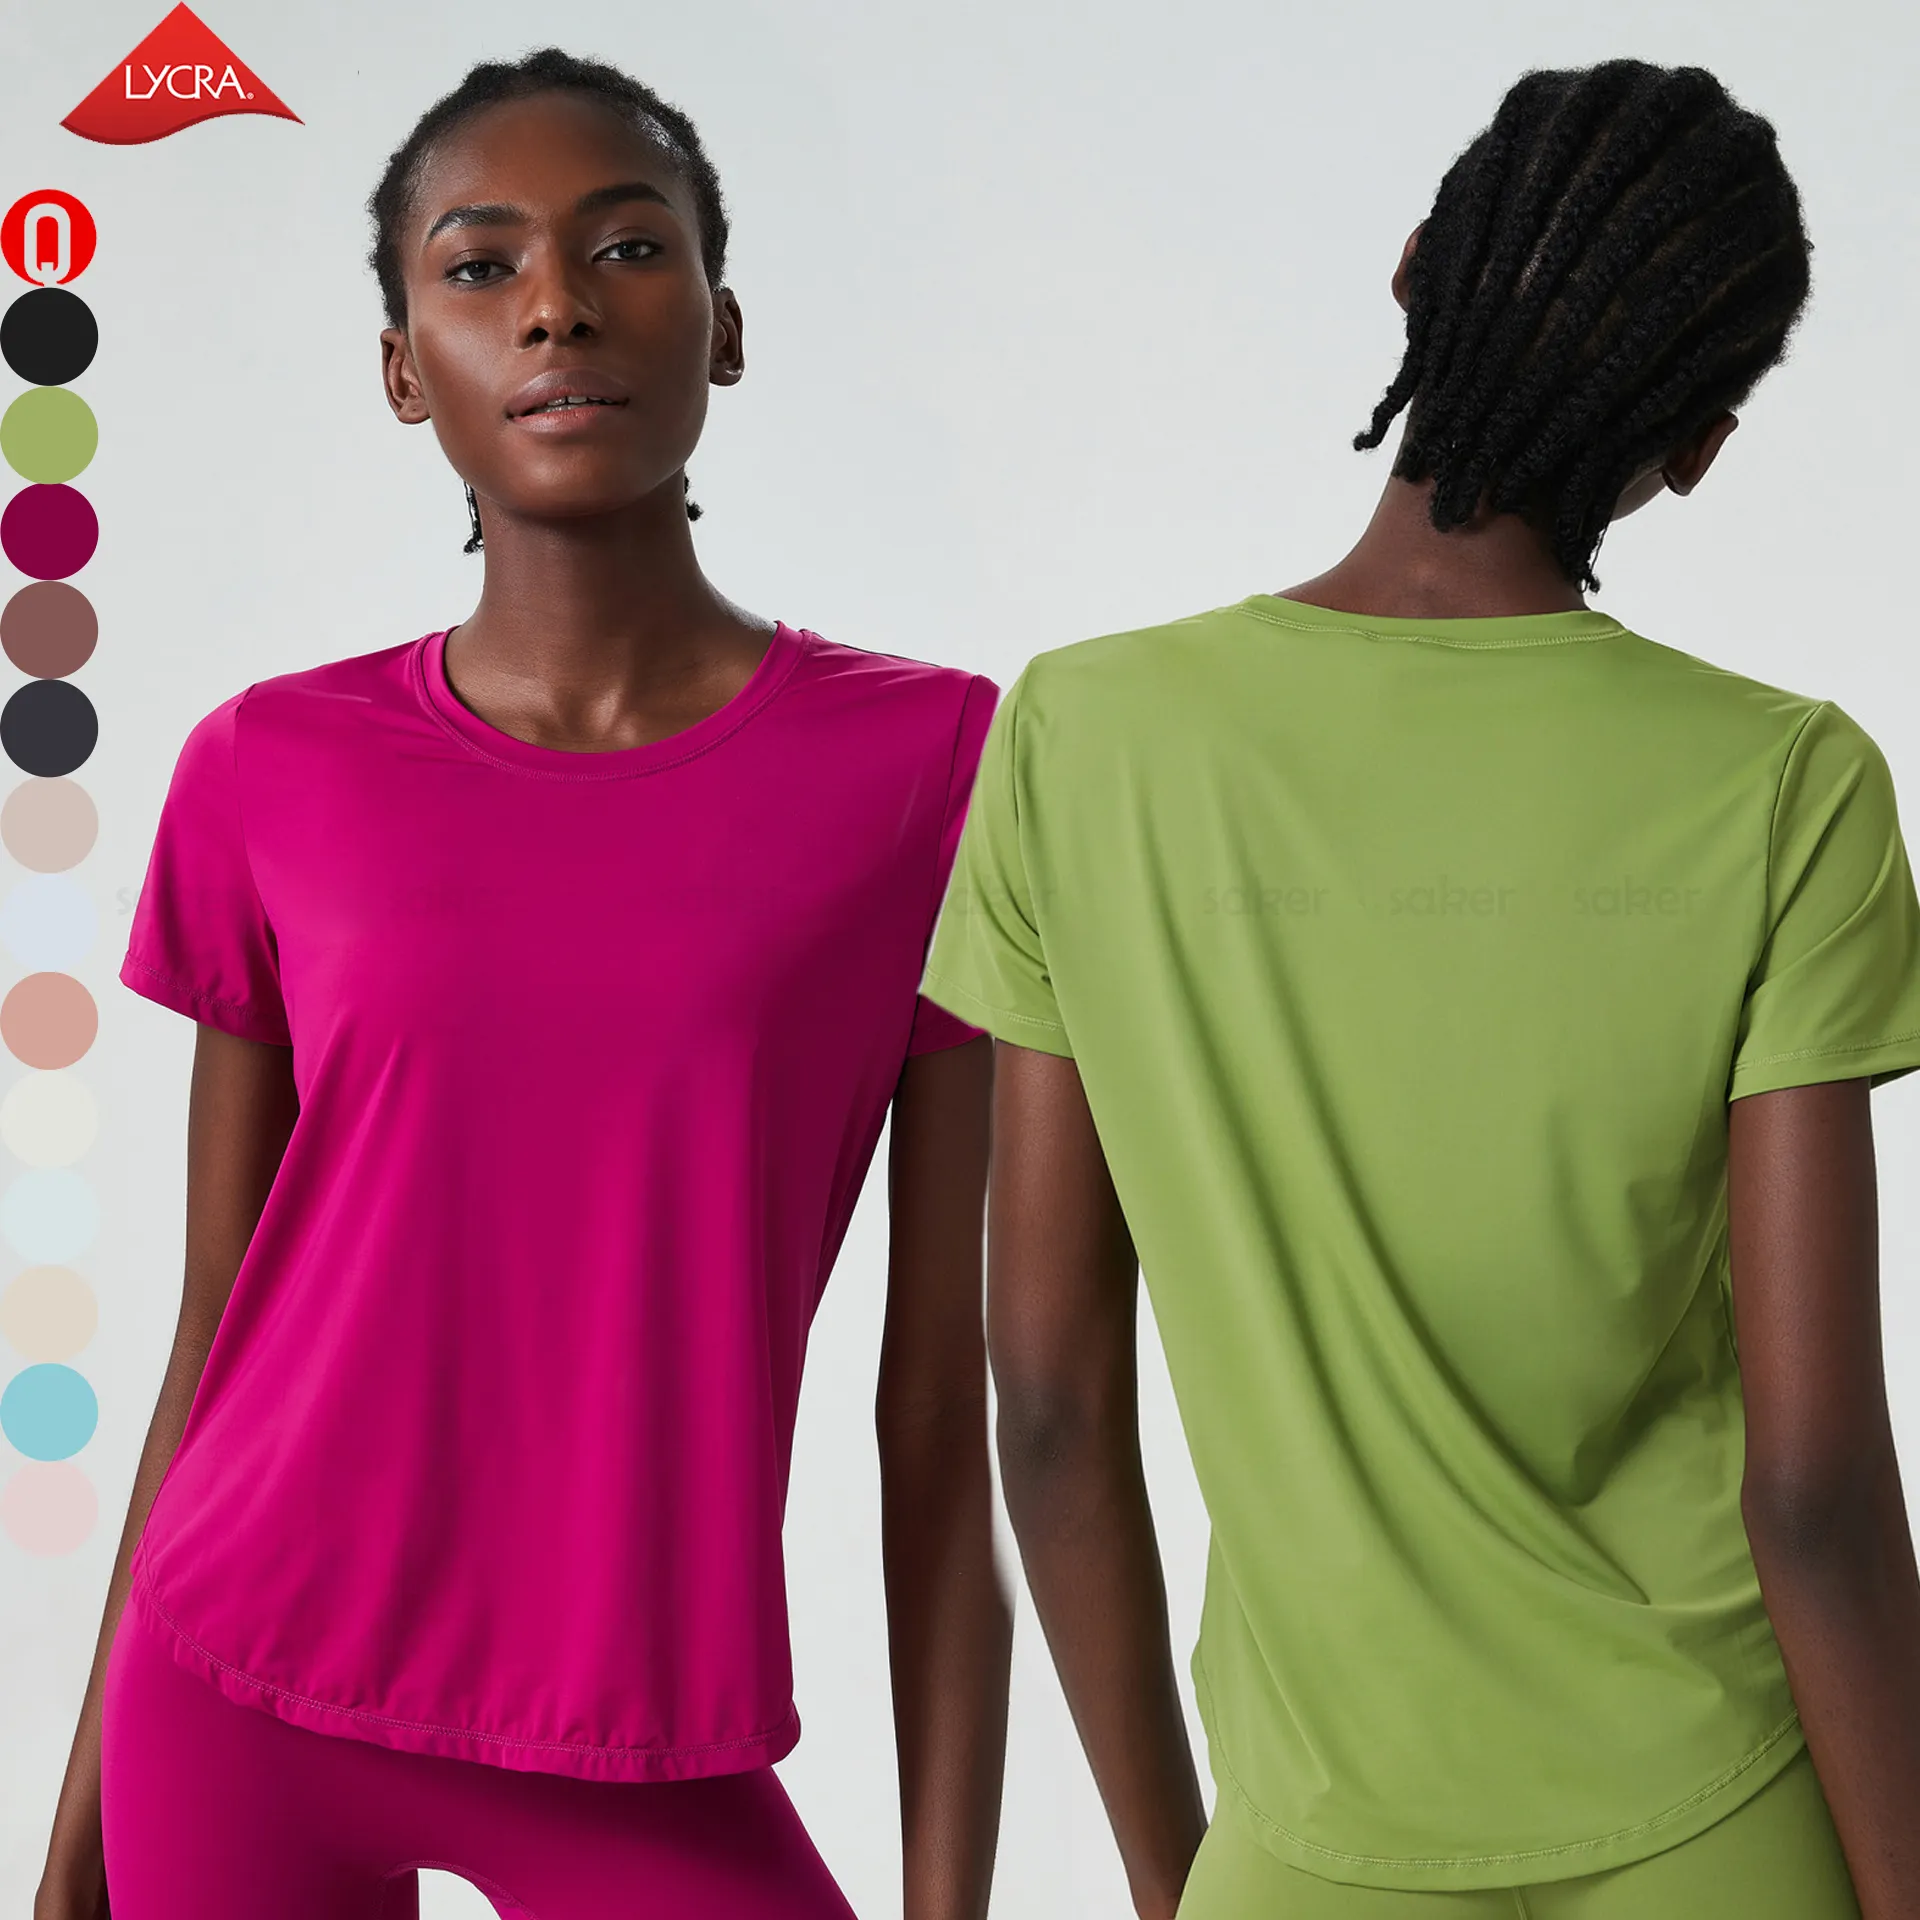 Respirável mulheres esporte camiseta lycra personalizado ao ar livre secagem rápida UV proteção solta camisa de manga curta t fabricante para senhoras